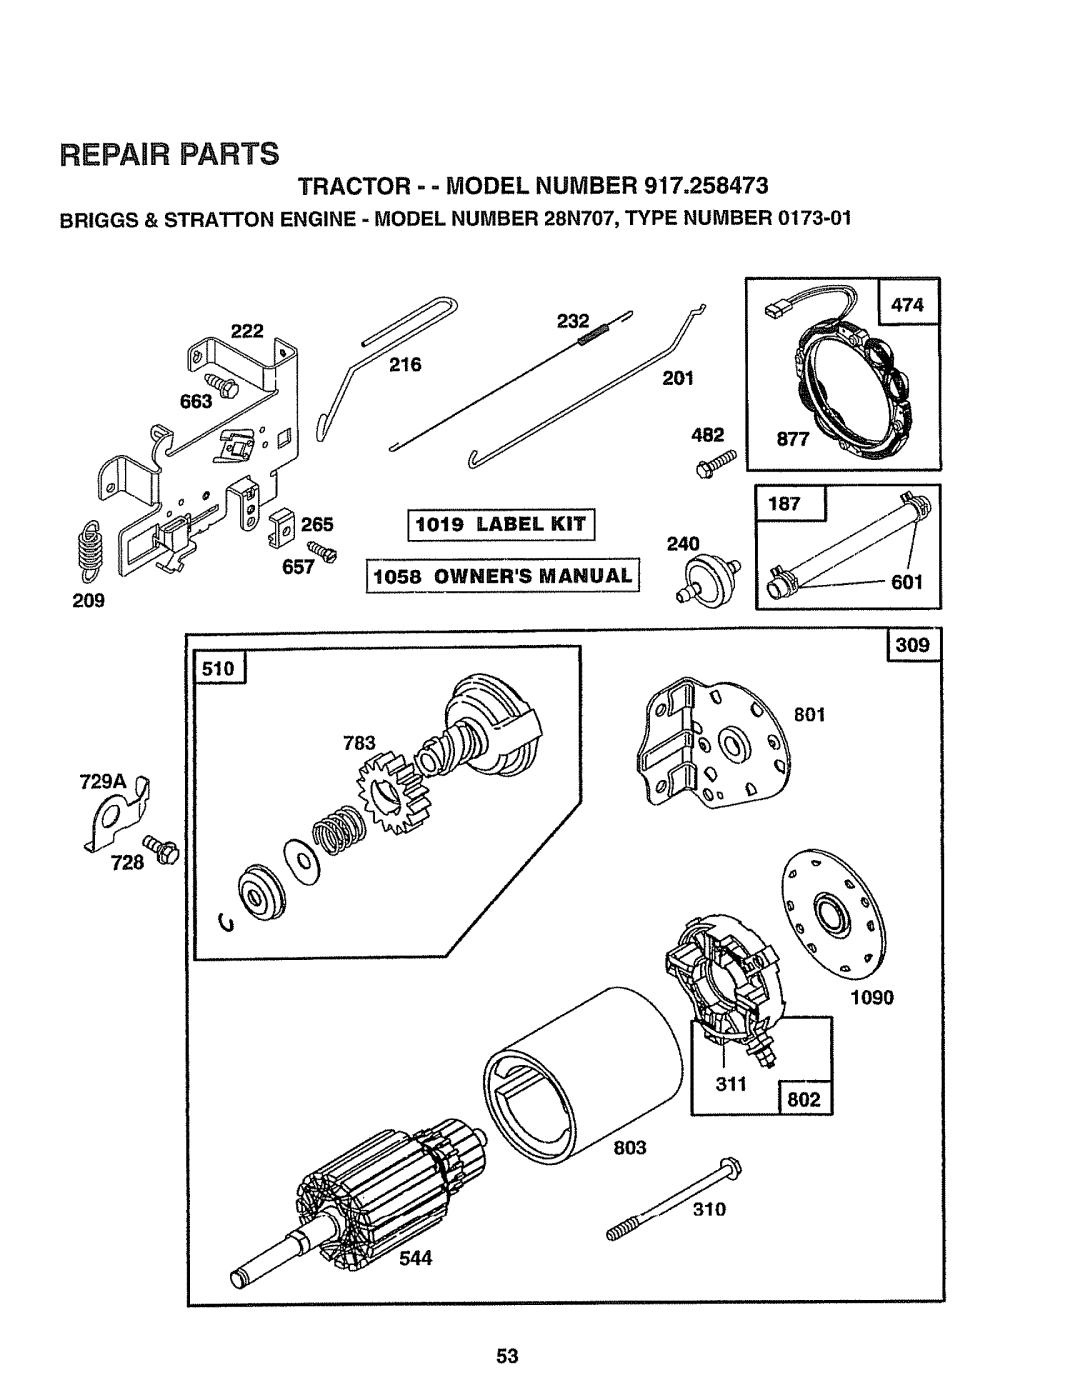 Sears 917.258473 owner manual TRACTOR - - MODEL NUMBER 917,258473, 601 209, Repair Parts 